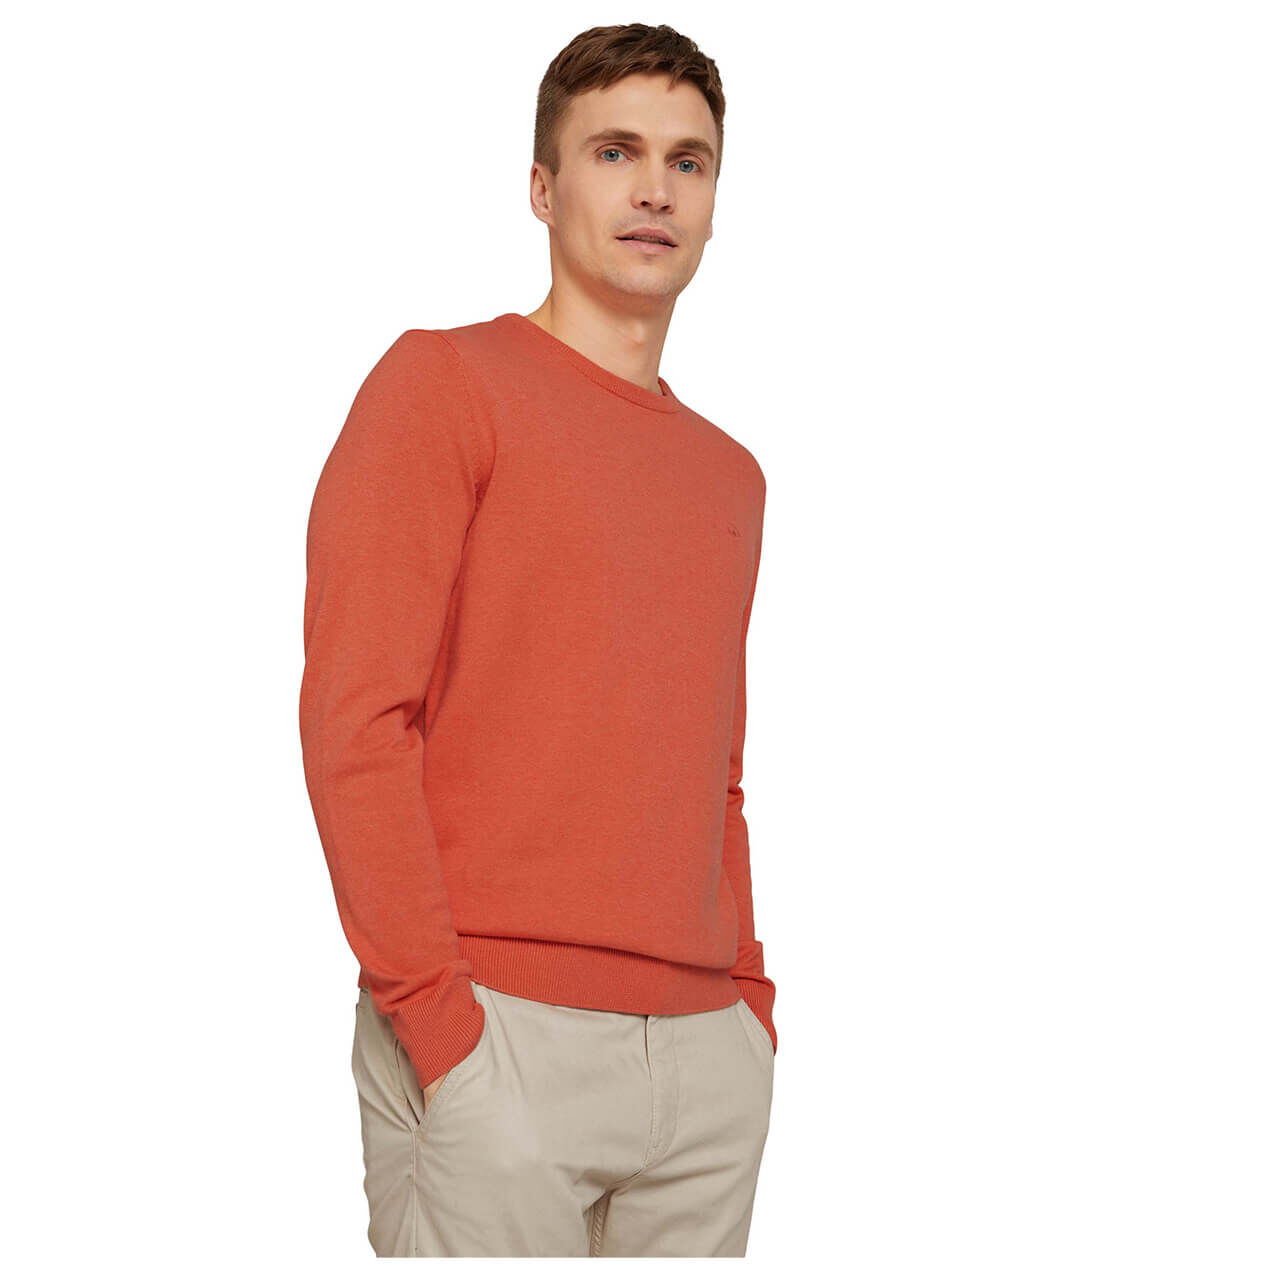 Tom Tailor Basic Crew-neck Sweater für Herren in Pfirsichrot, FarbNr.: 29420